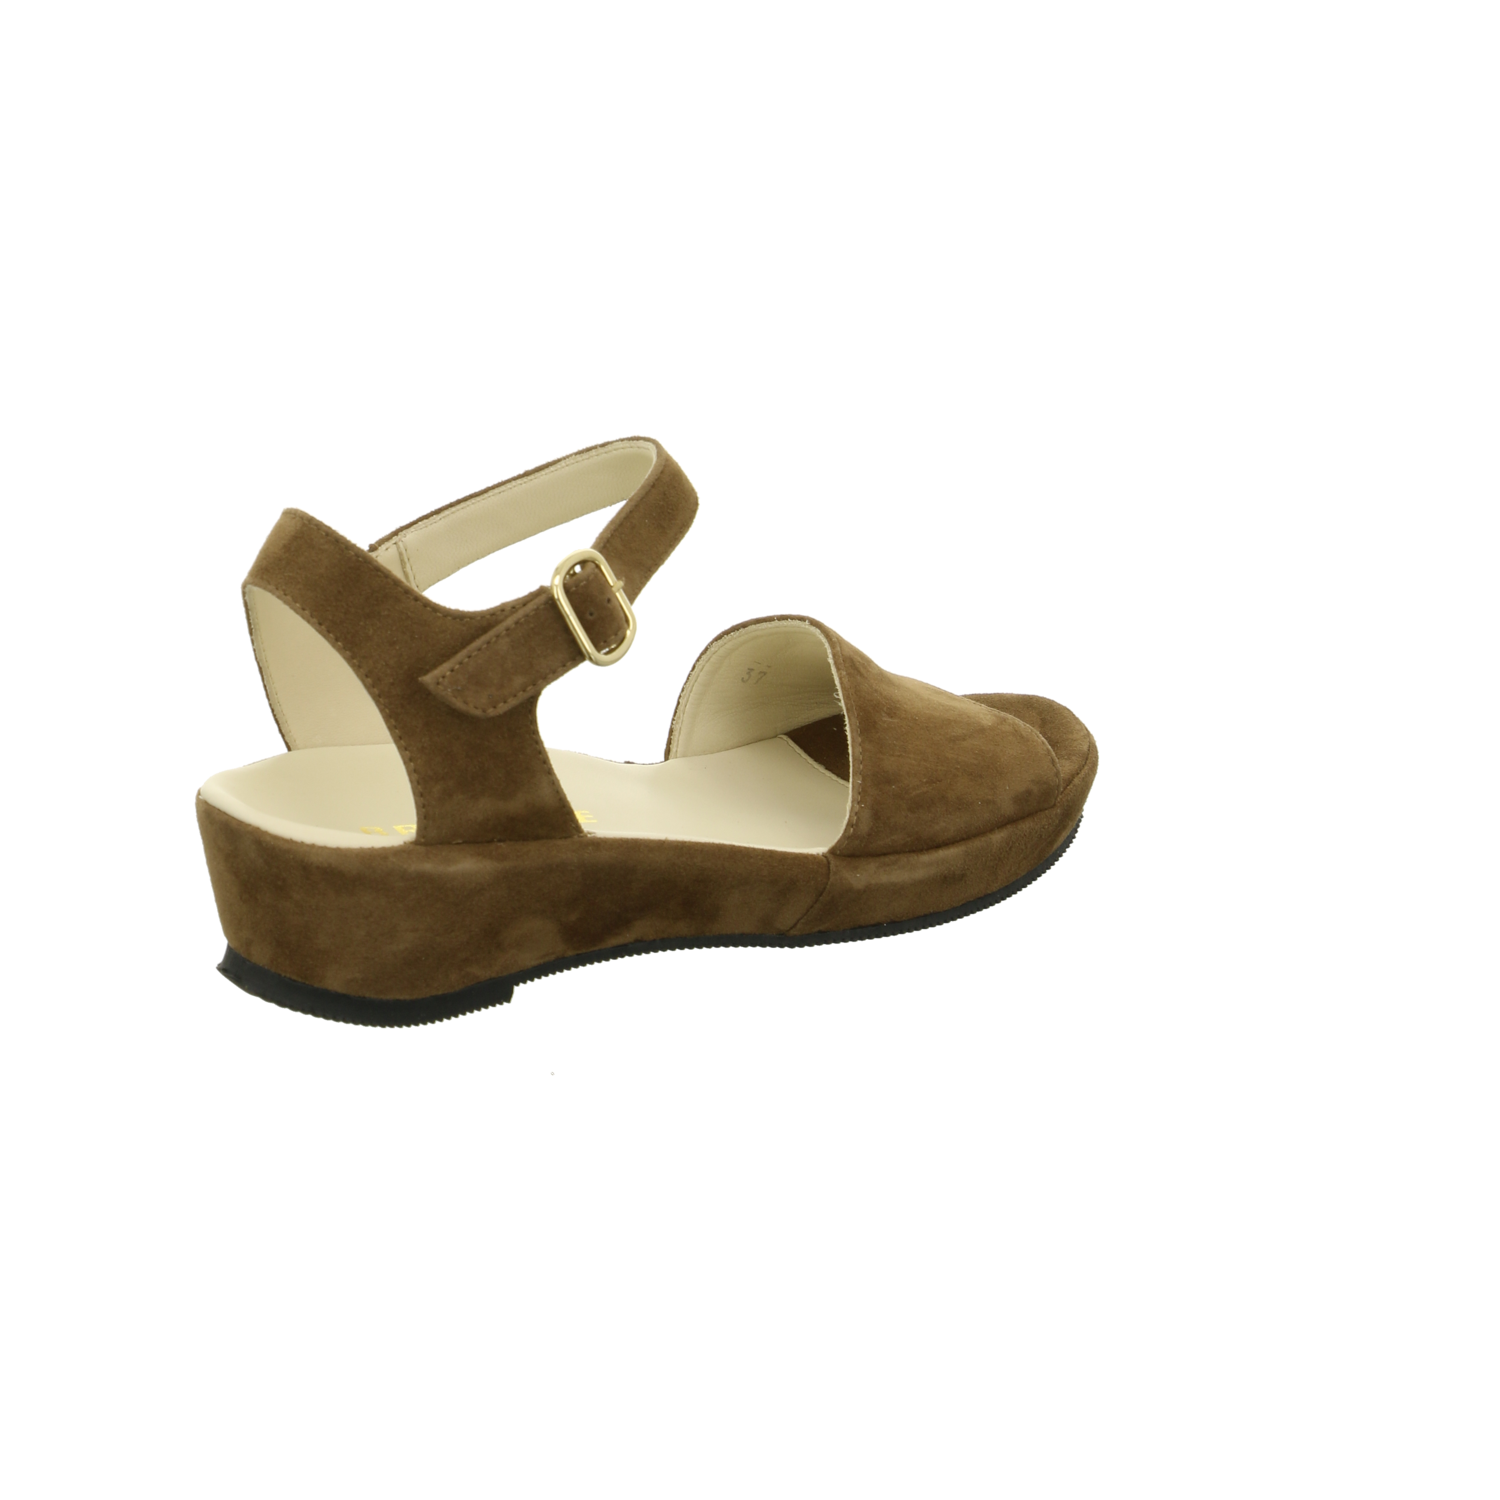 Brunate Sandalette bis 45 mm braun / dunkel-braun